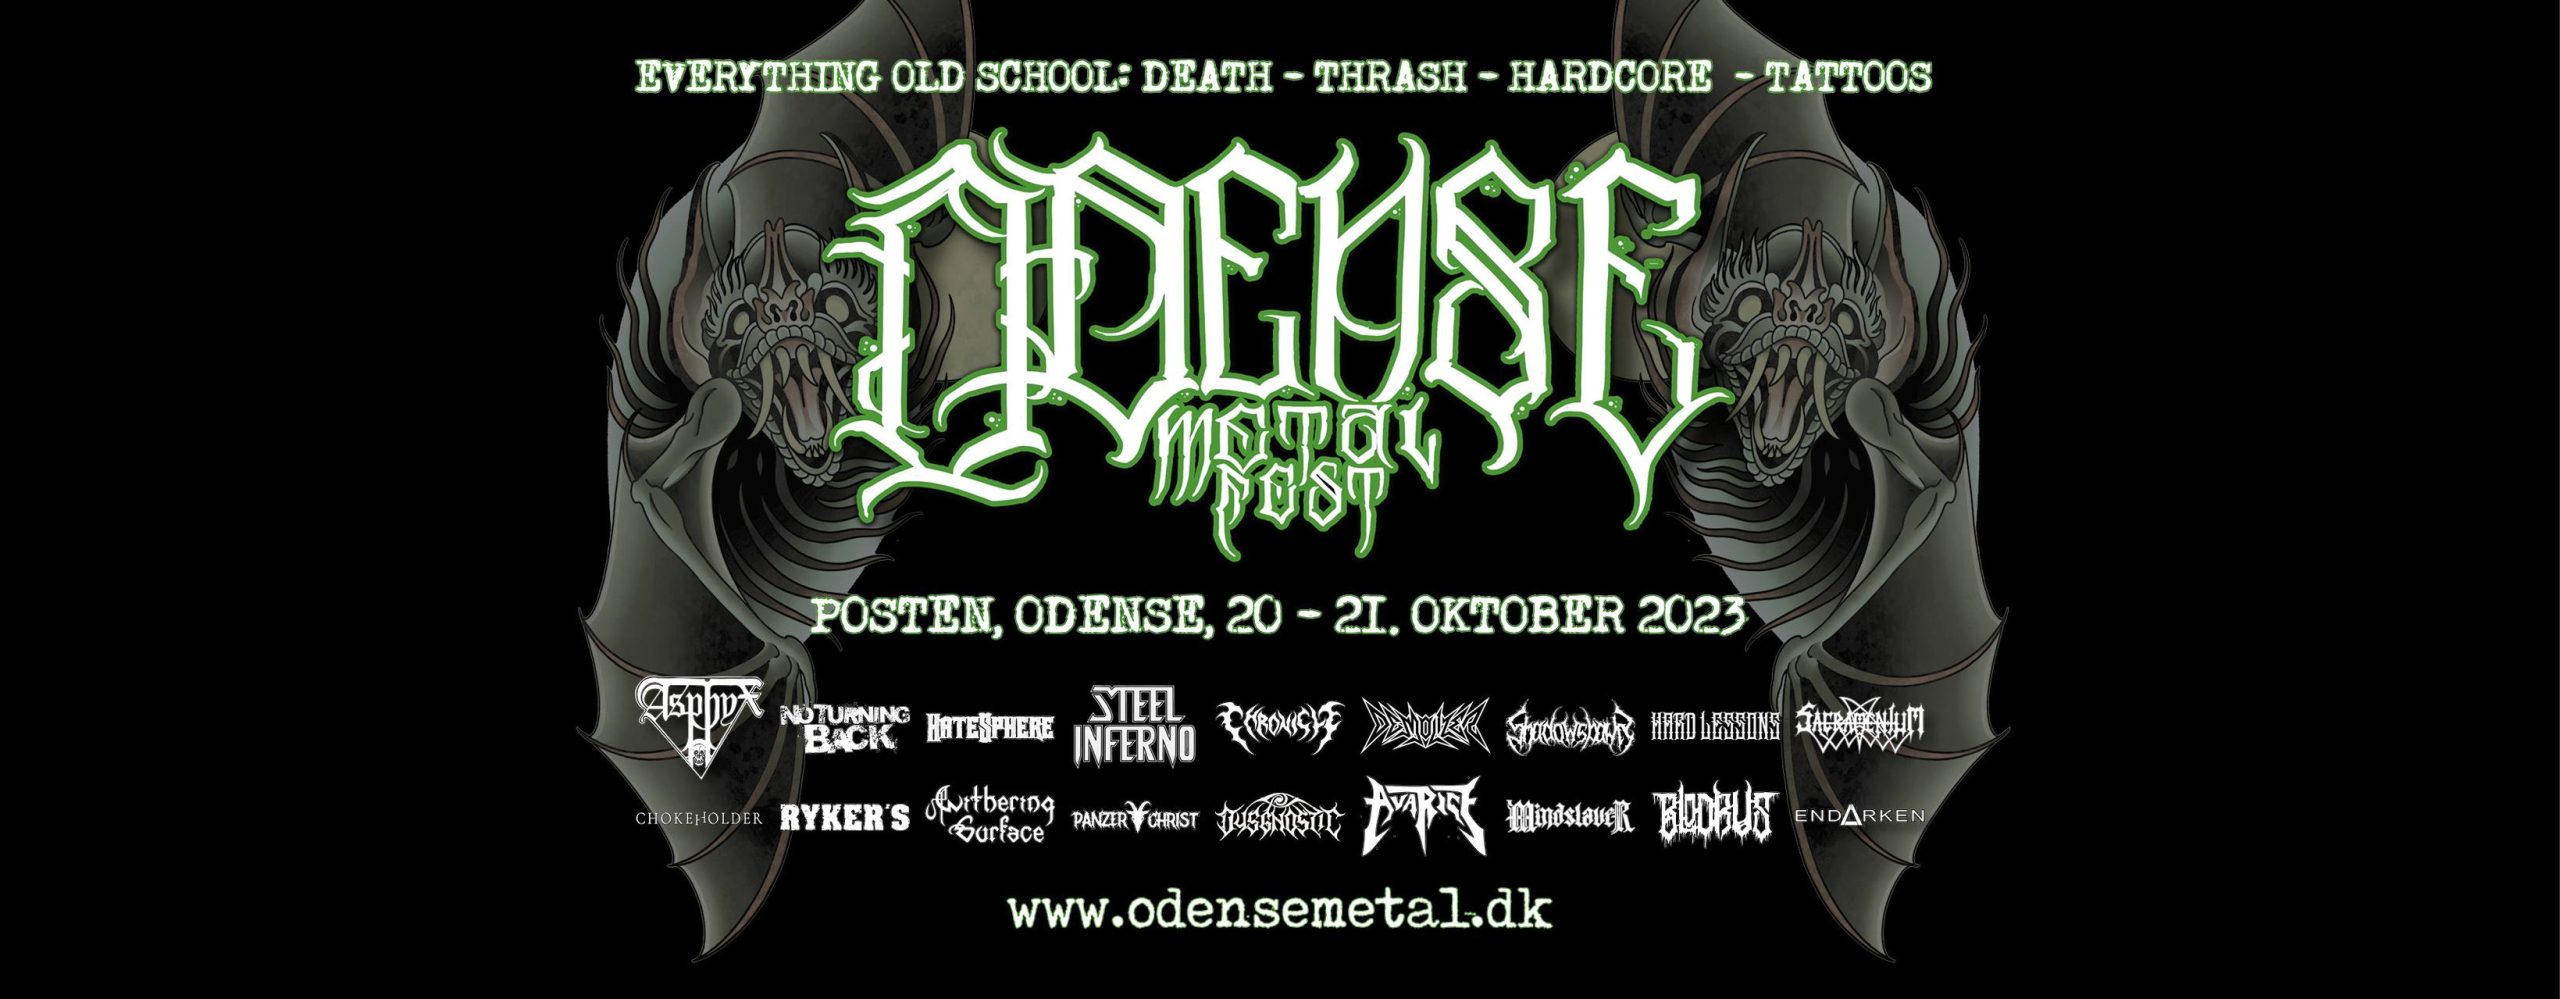 Odense Metalfest 2023